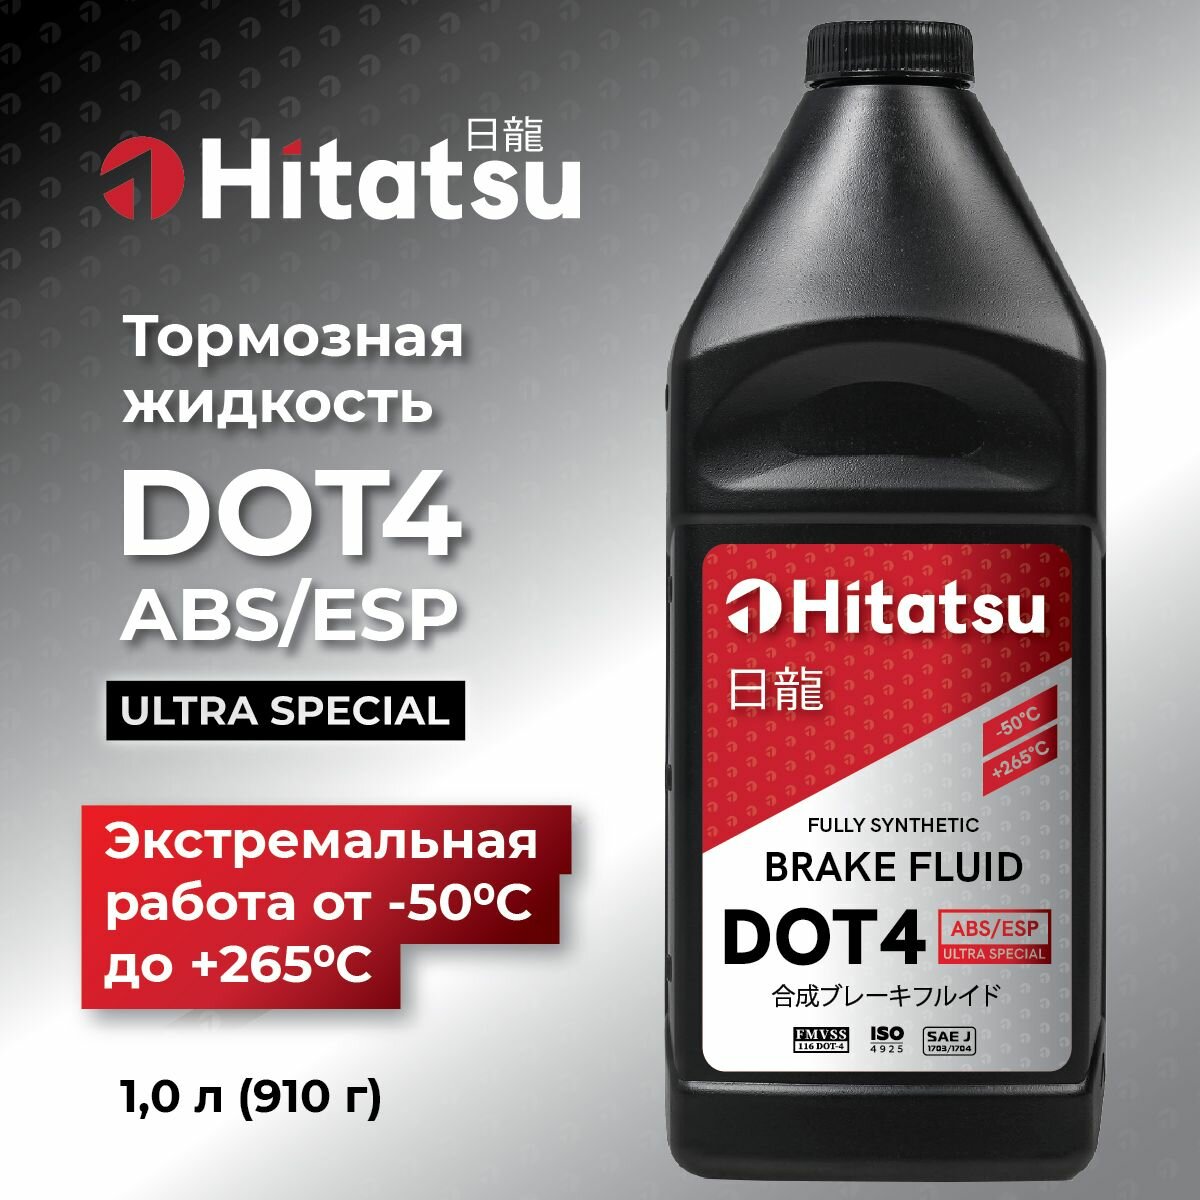 Тормозная жидкость Hitatsu DOT4 ABS/ESP 1л (910 гр)